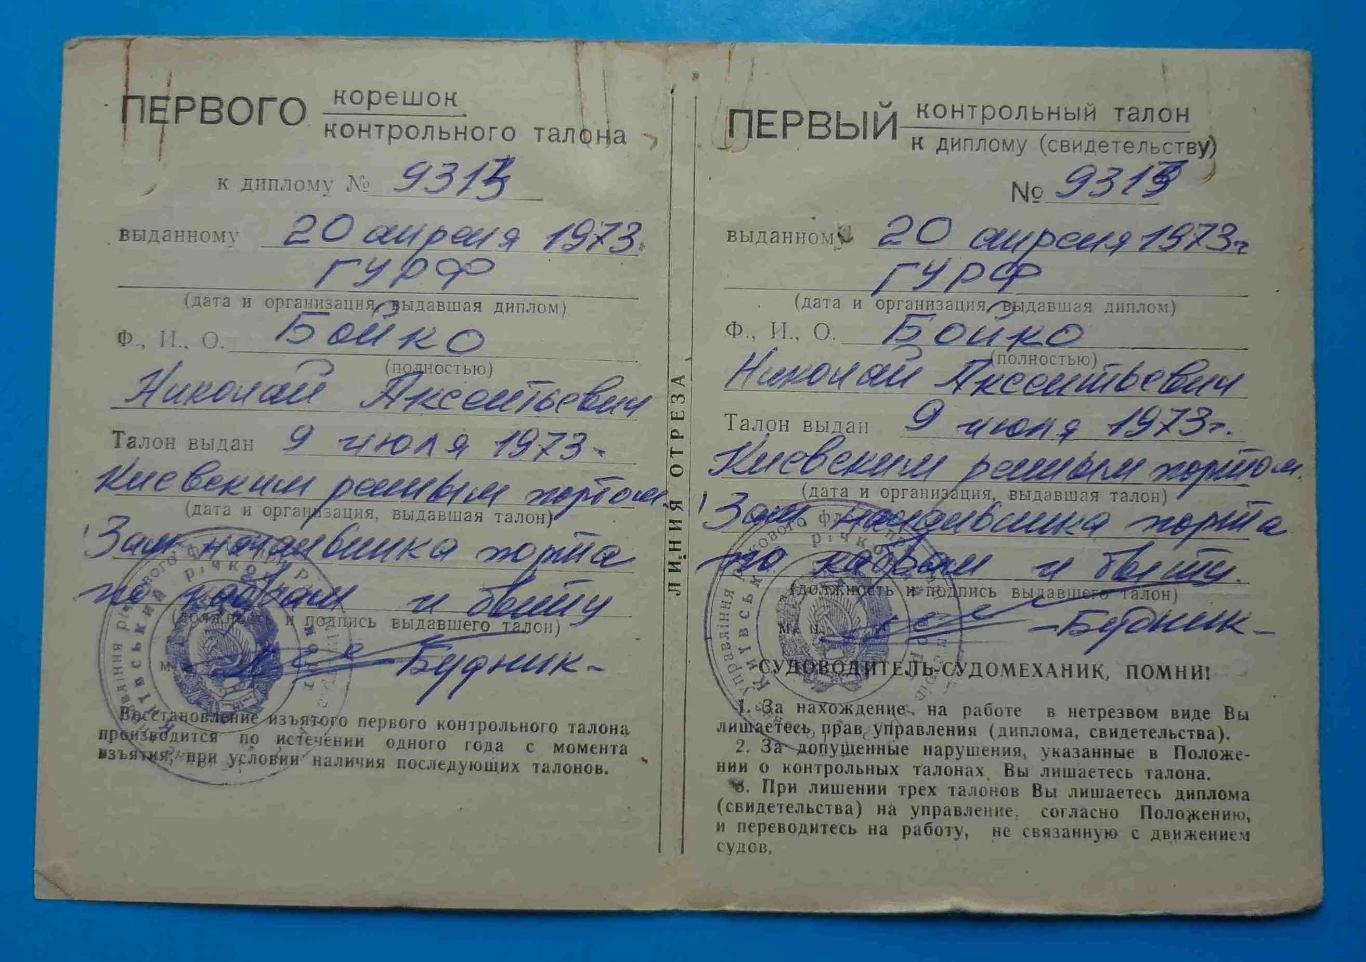 Дипломы судомеханика и судоводителя с талонами Речной флот УССР 1973 2